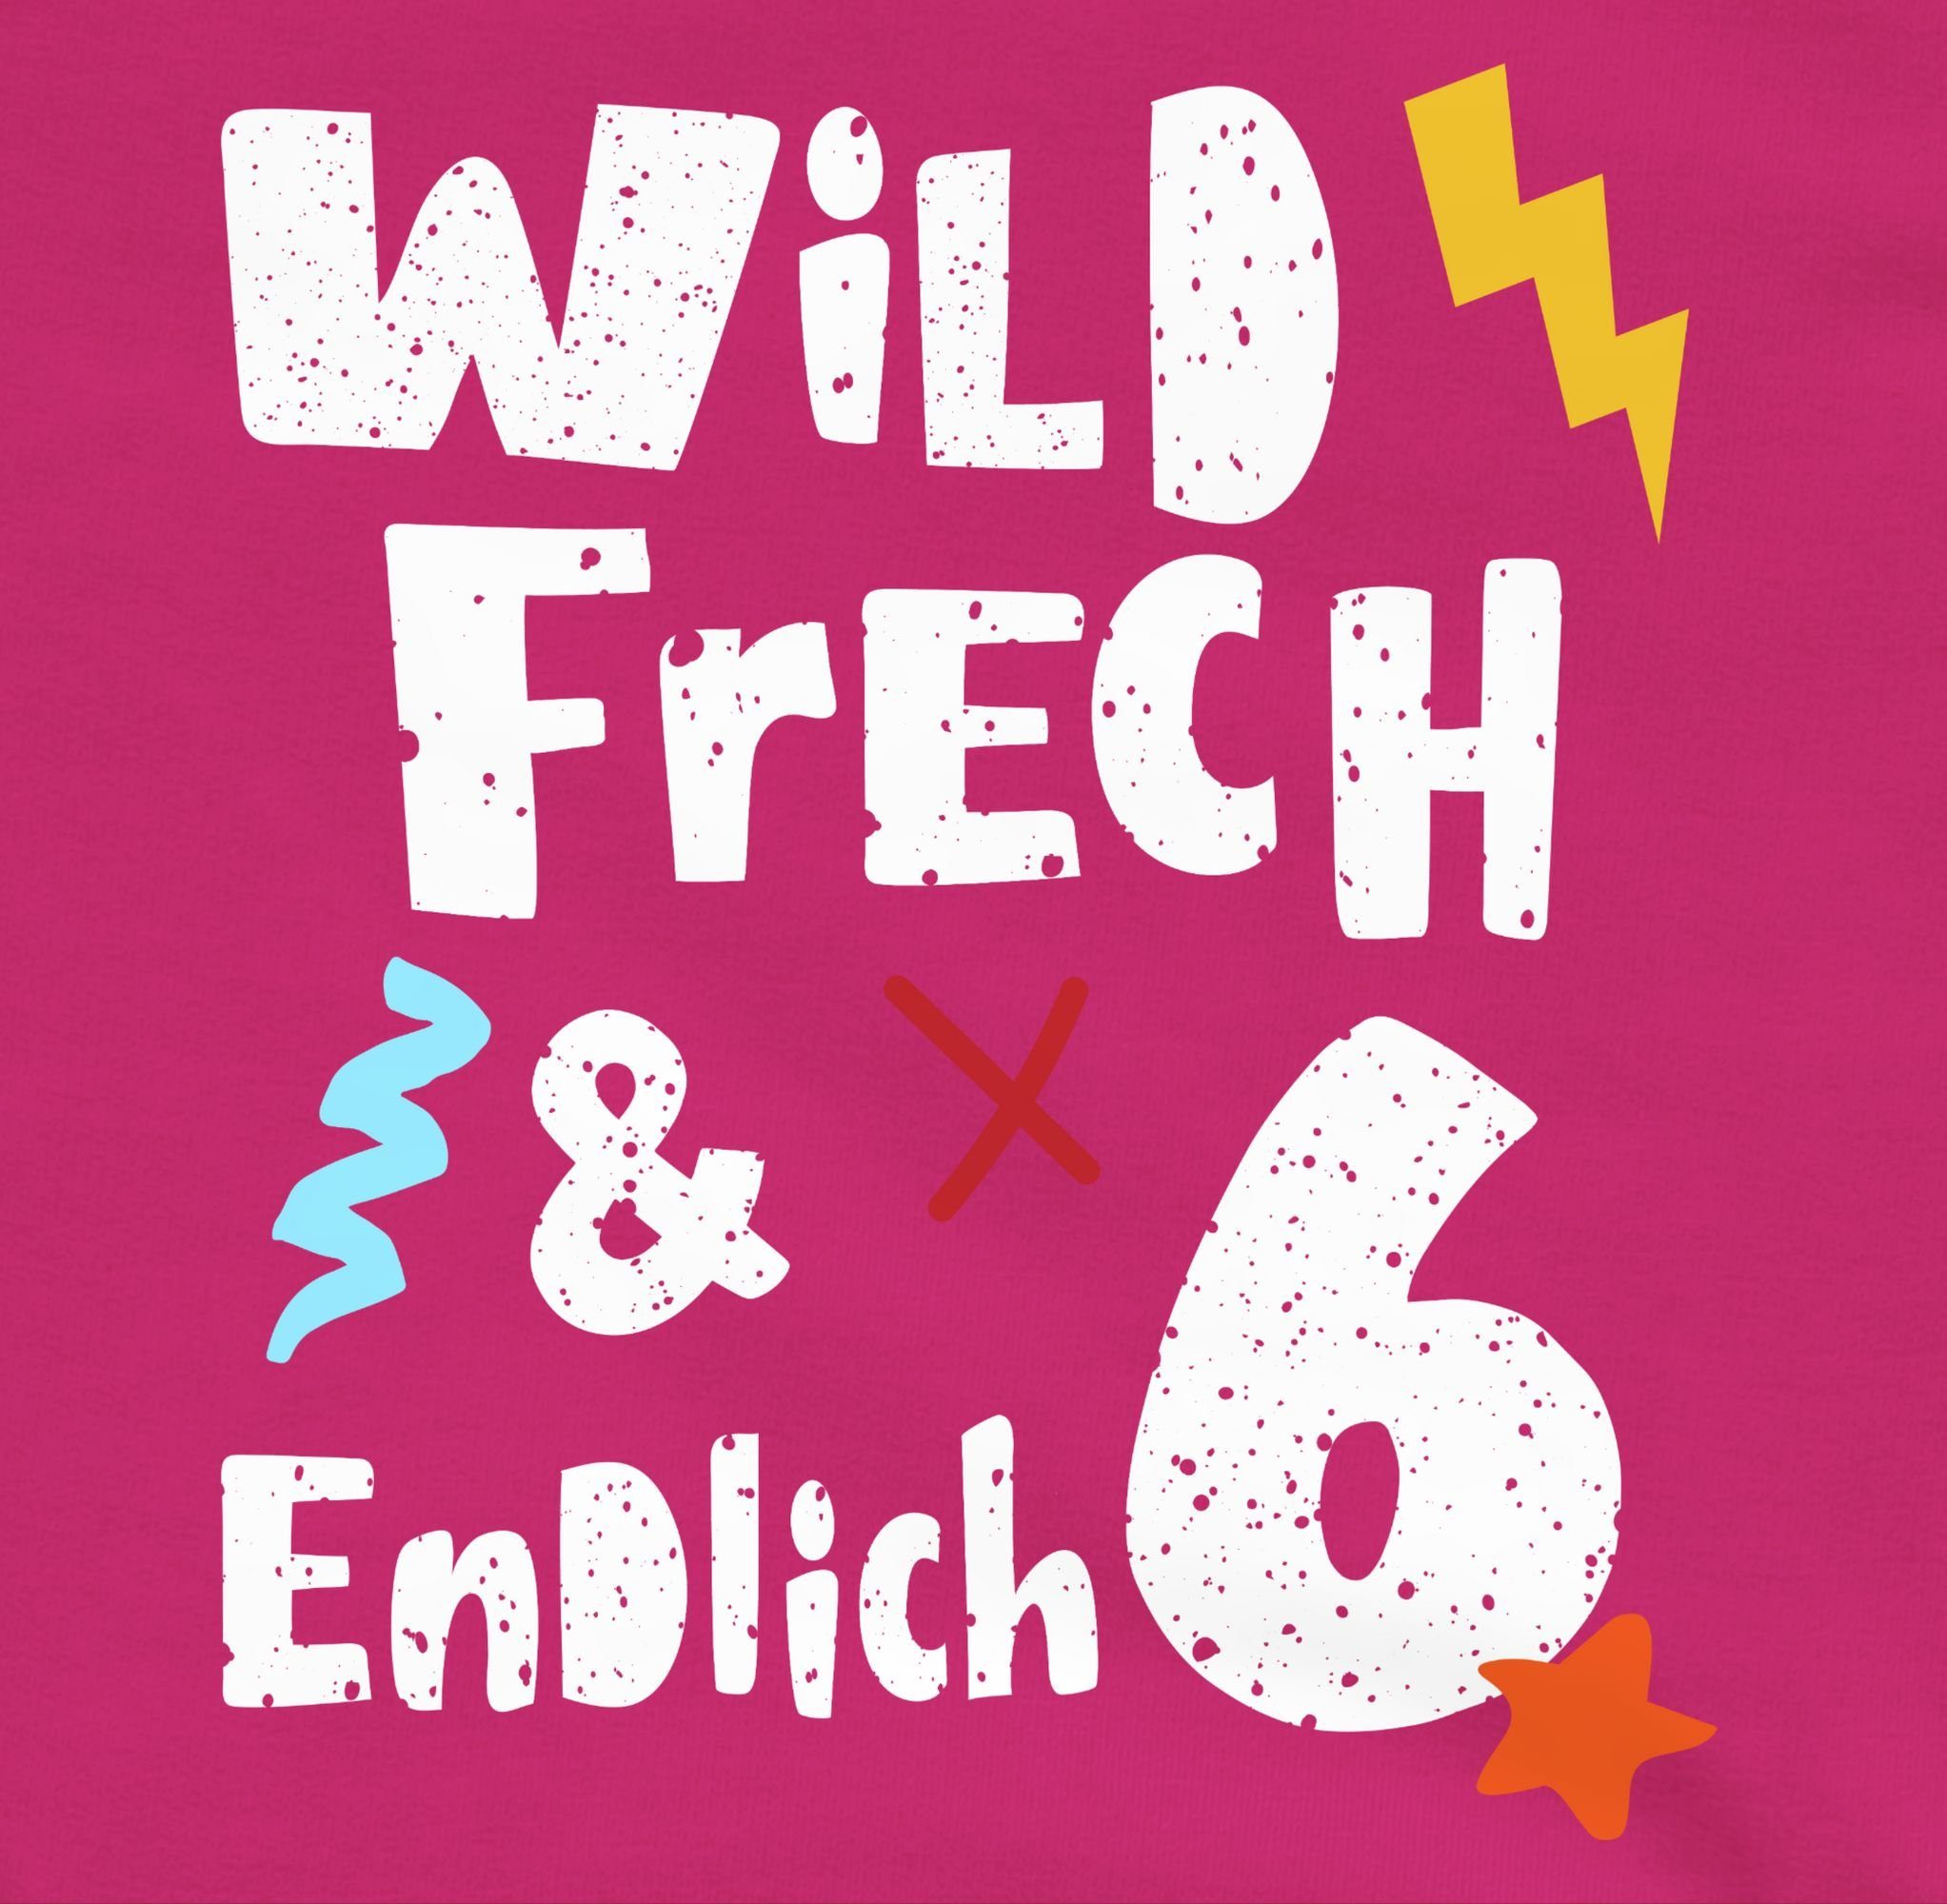 Wunderbar 6. Fuchsia Jahre 2 frech endlich Sechs 6 Shirtracer - Wild Geburtstag Sweatshirt und